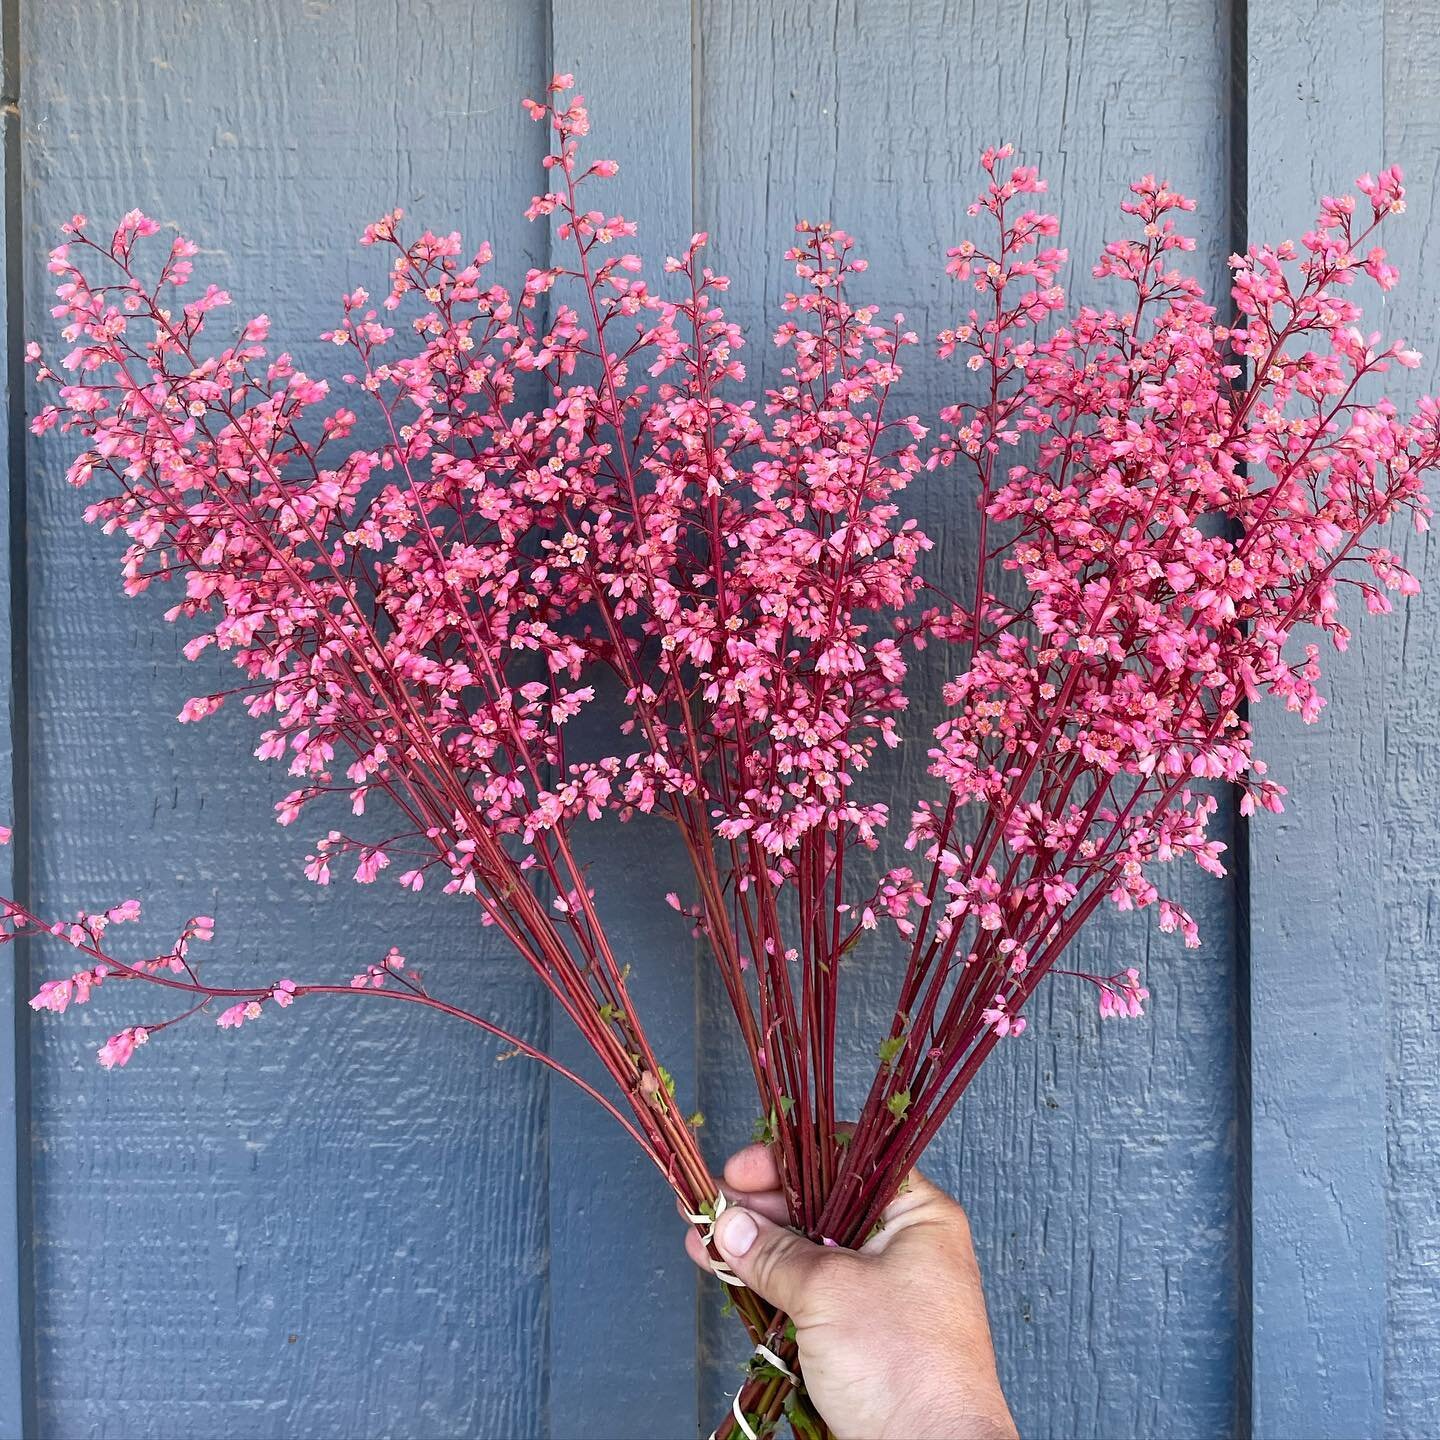 Sweet delicate coral bells. #coralbells #thestarterfarm #cutflowers #local #beauties #slowflowers #floret #ayearinflowers #air #garden #farm #805 #spring #california